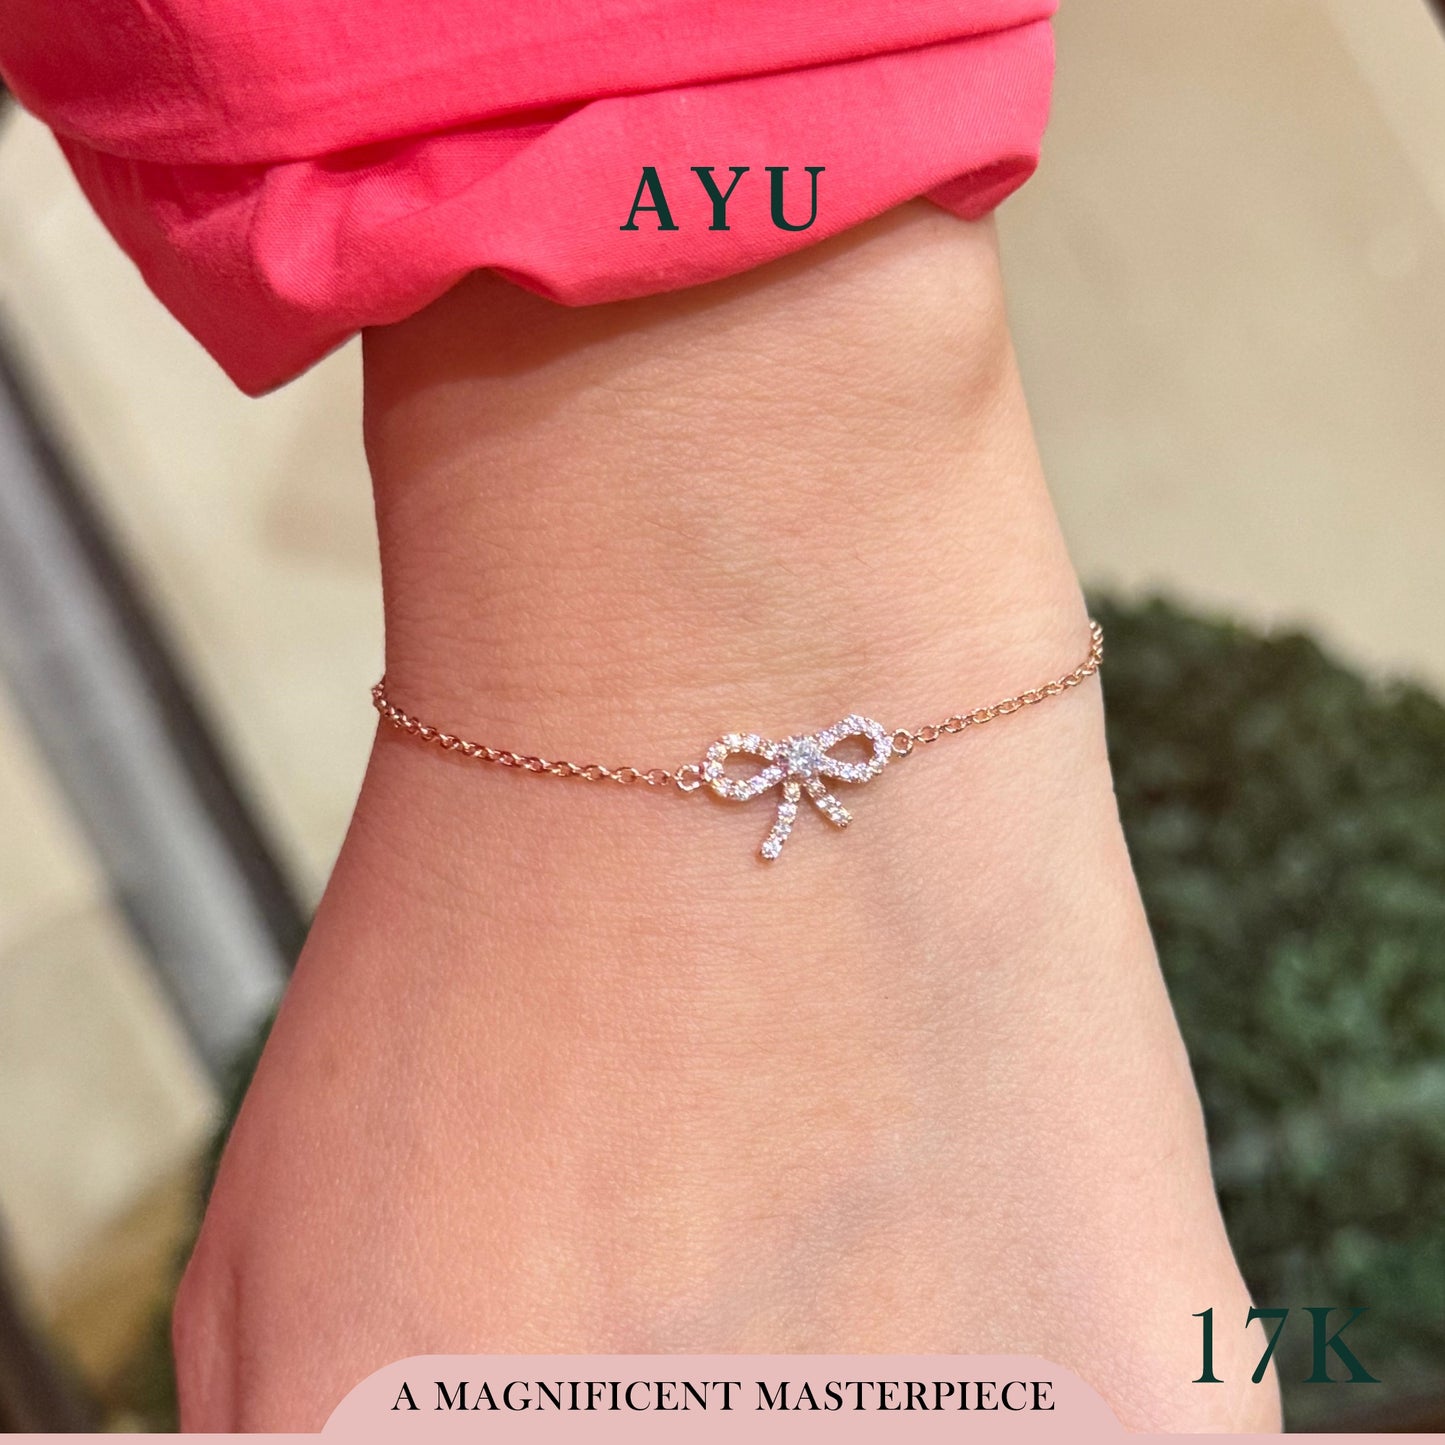 AYU Gelang Emas-Twinkle Pave Ribbon Chain Bracelet 17k Rose Gold